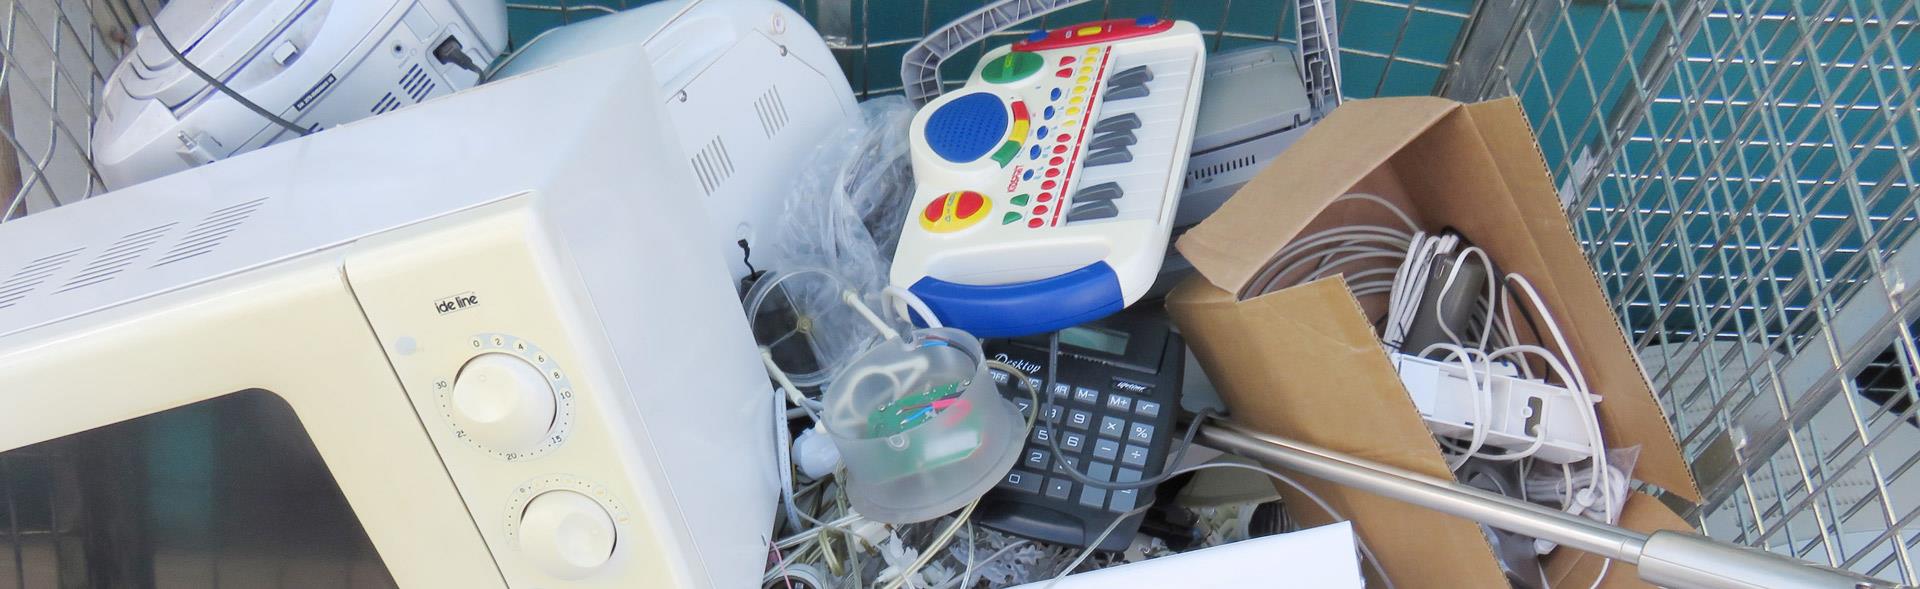 Microovn, legetøjskeyboard, ledninger og andet elektronik i bur på genbrugsplads